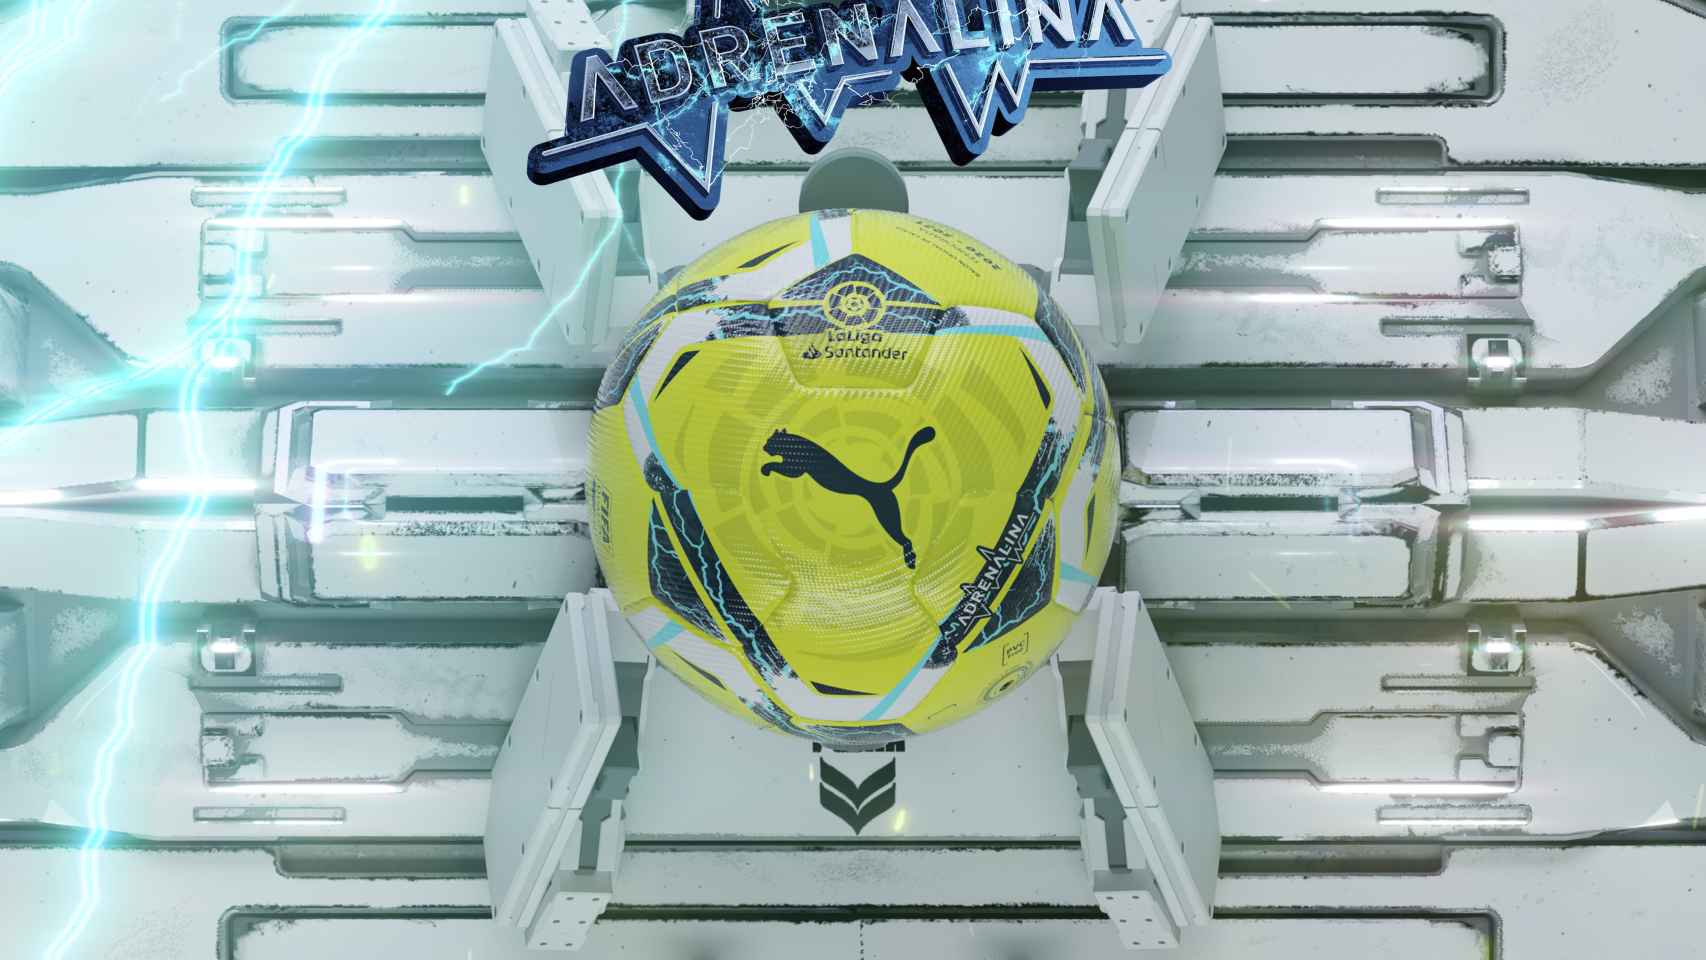 LaLiga y Puma presentan los nuevos balones oficiales para la temporada 2020/21